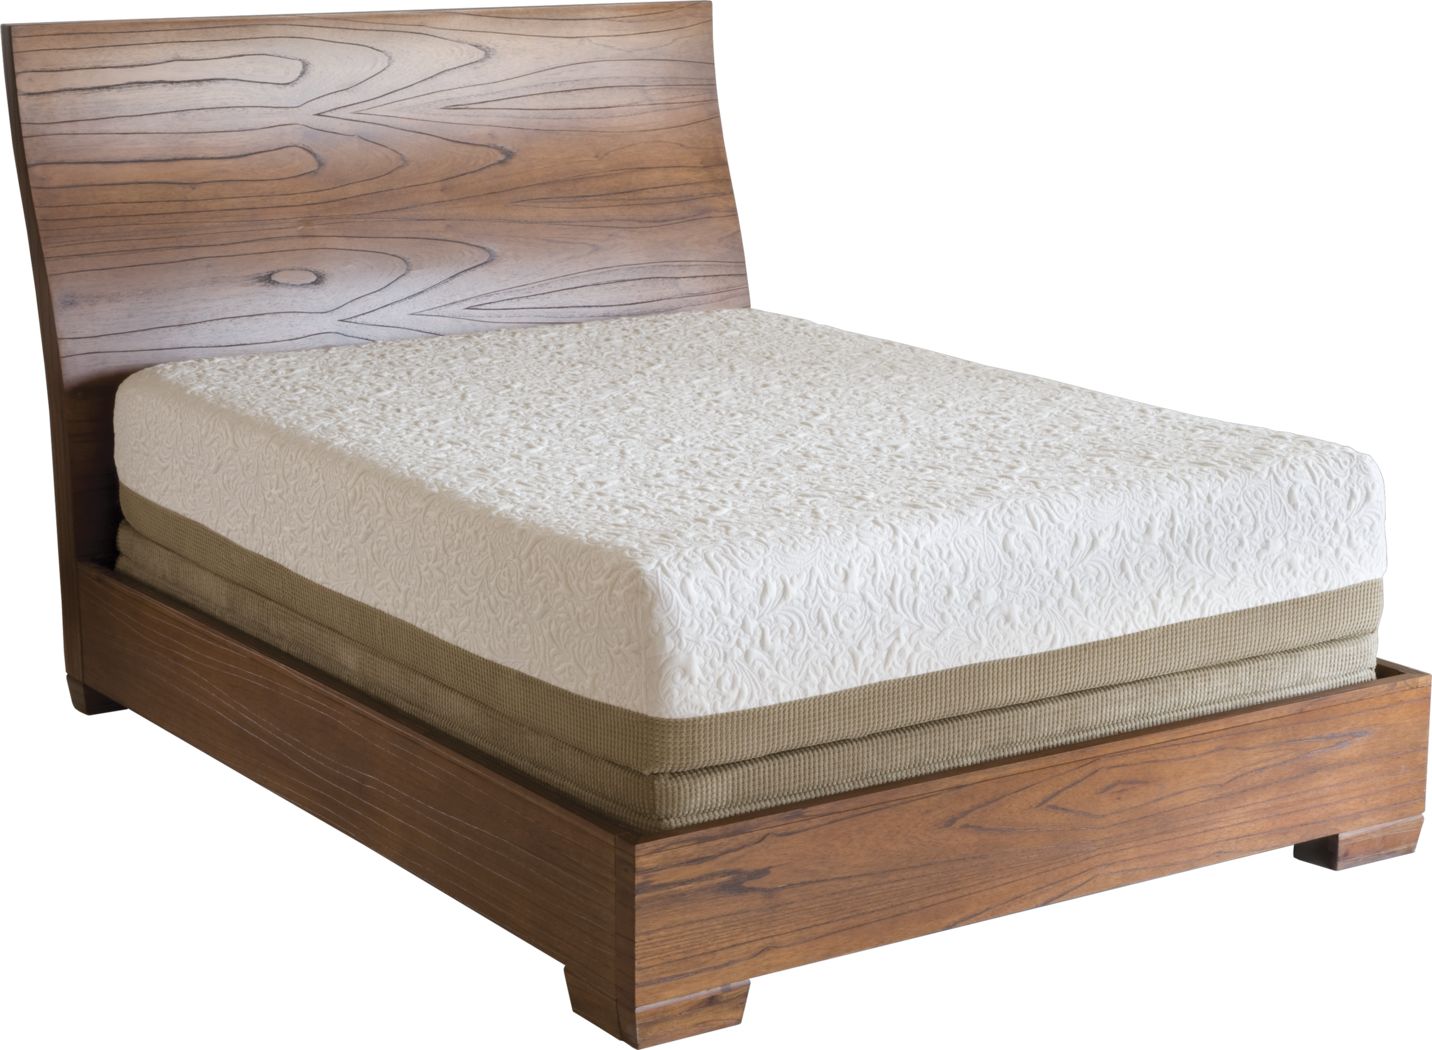 serta icomfort prodigy everfeel mattress reviews